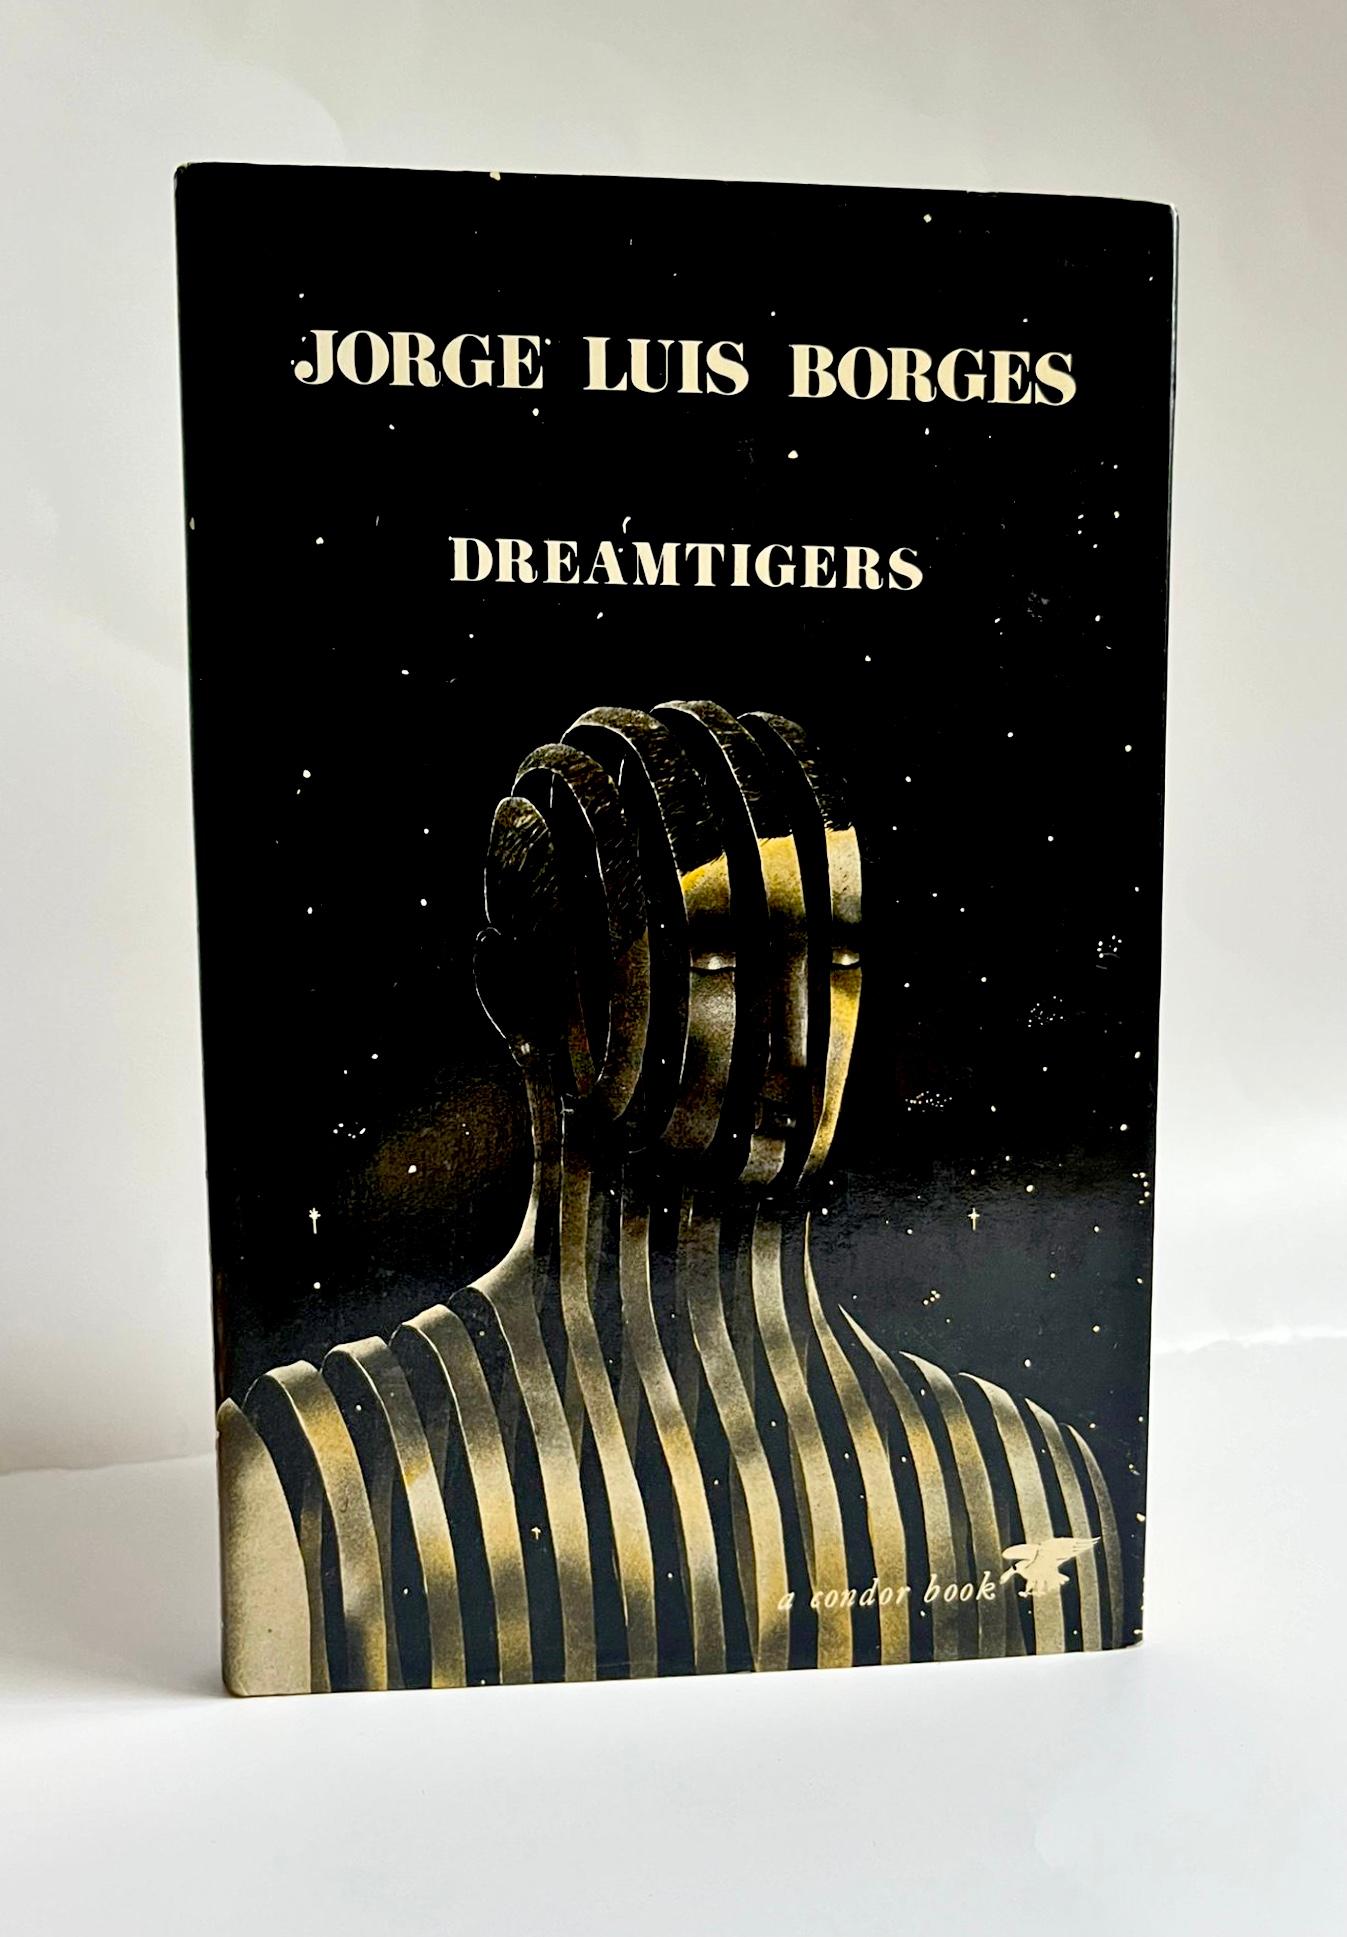 Dreamtigers by Jorge Luis Borges